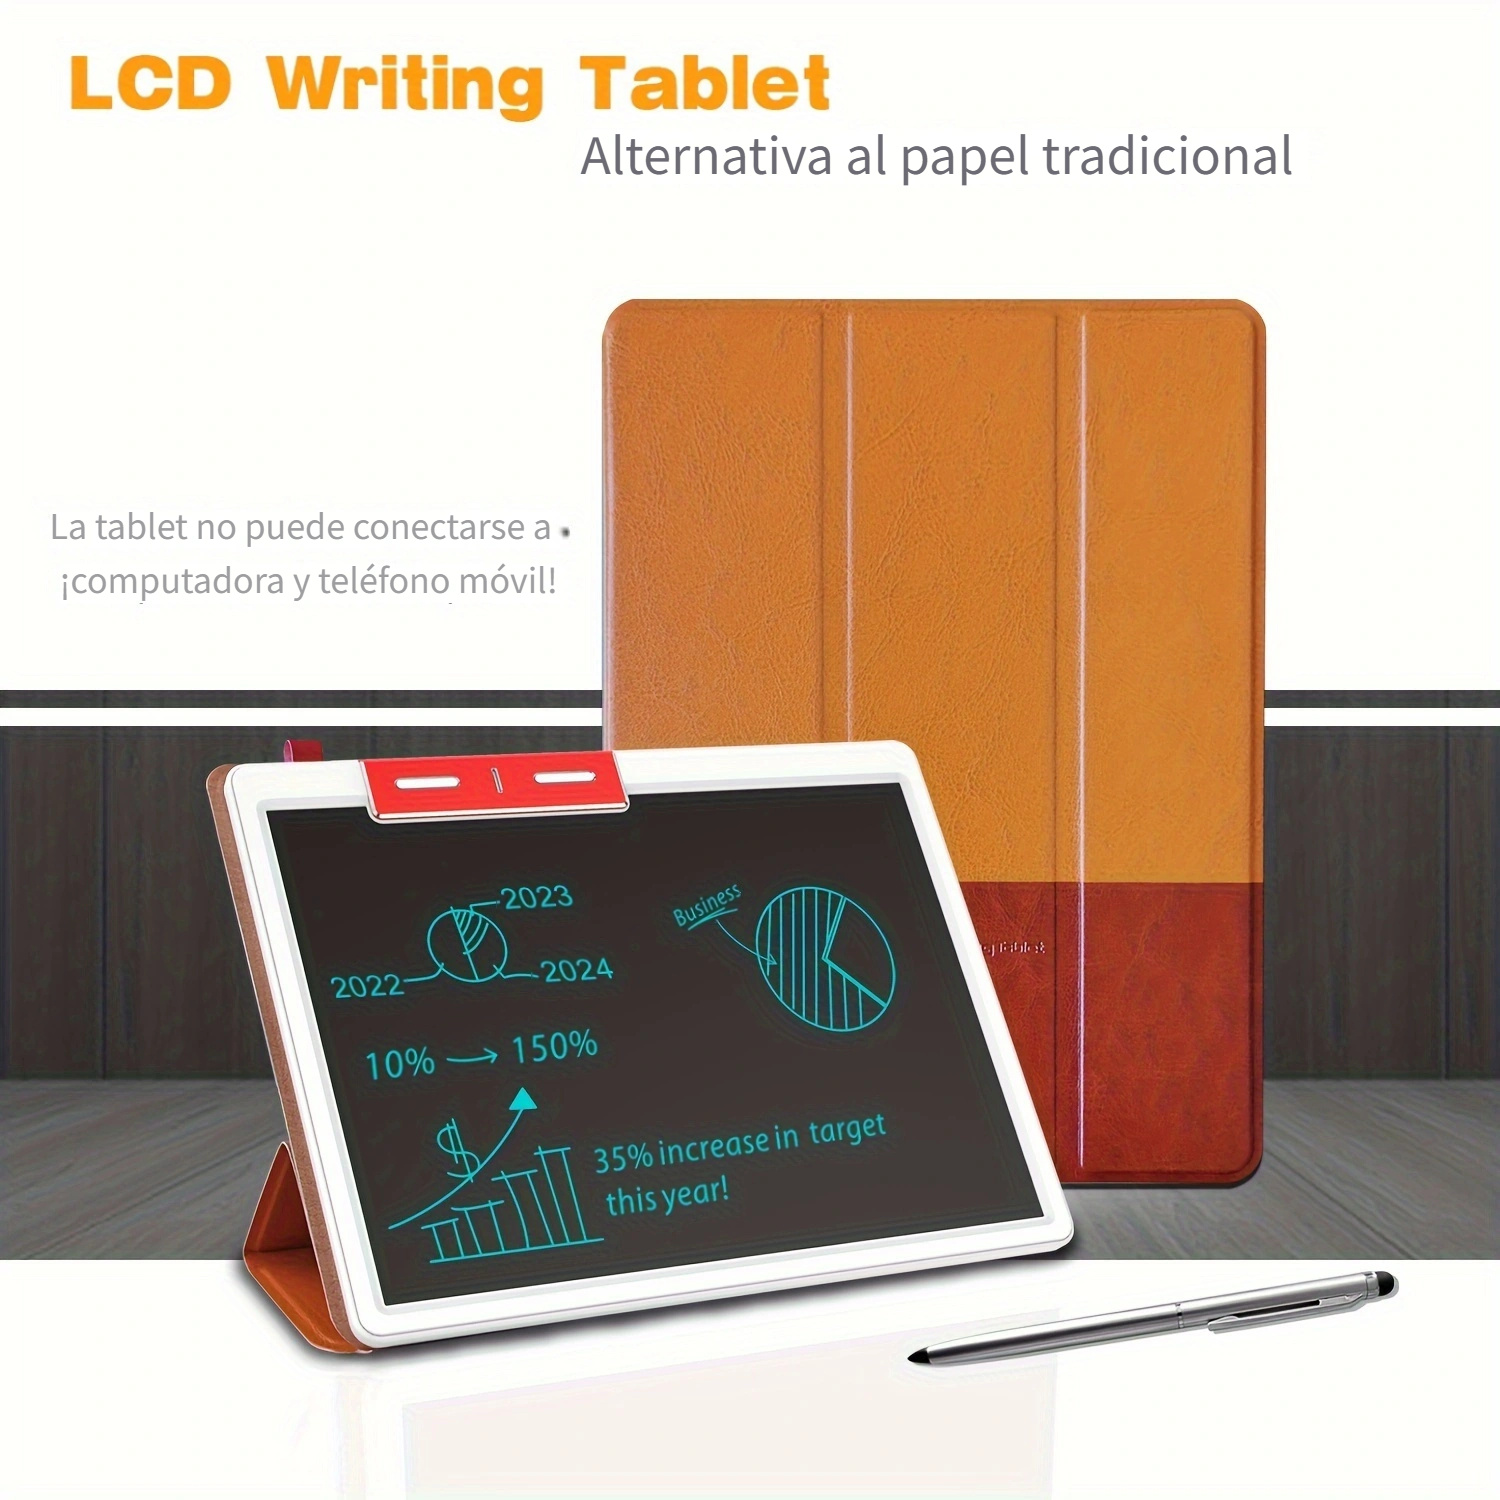 Cuaderno Electrónico 7.35 Pulgadas Tableta Escritura Lcd - Temu